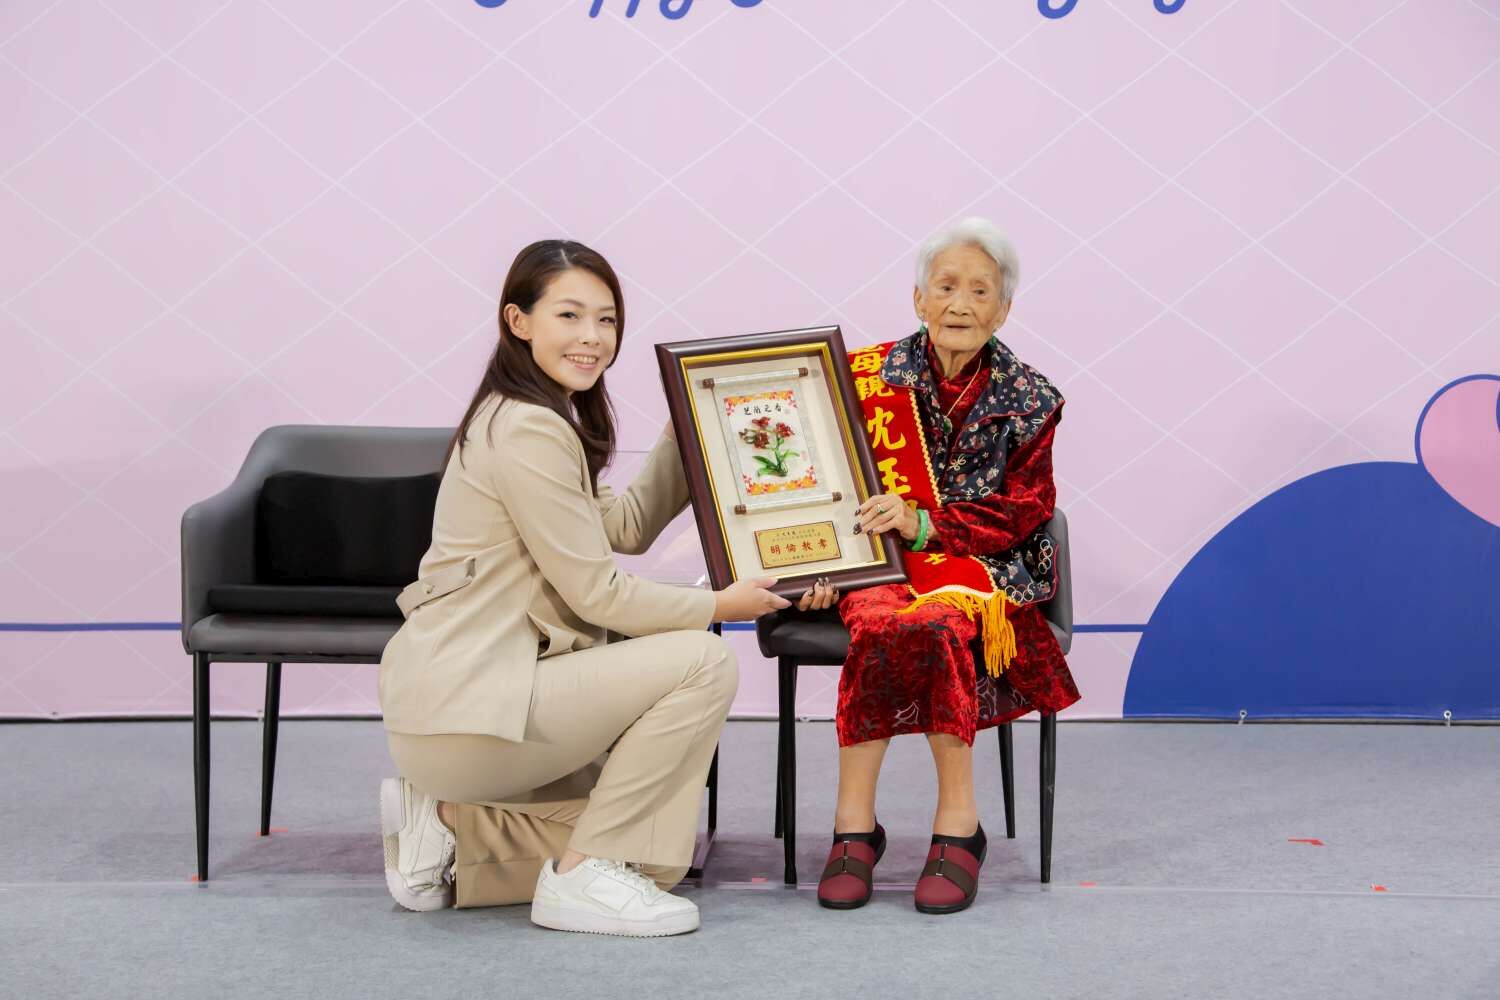 高市長頒發模範母親給當日最高齡者102歲的沈玉鳳奶奶。